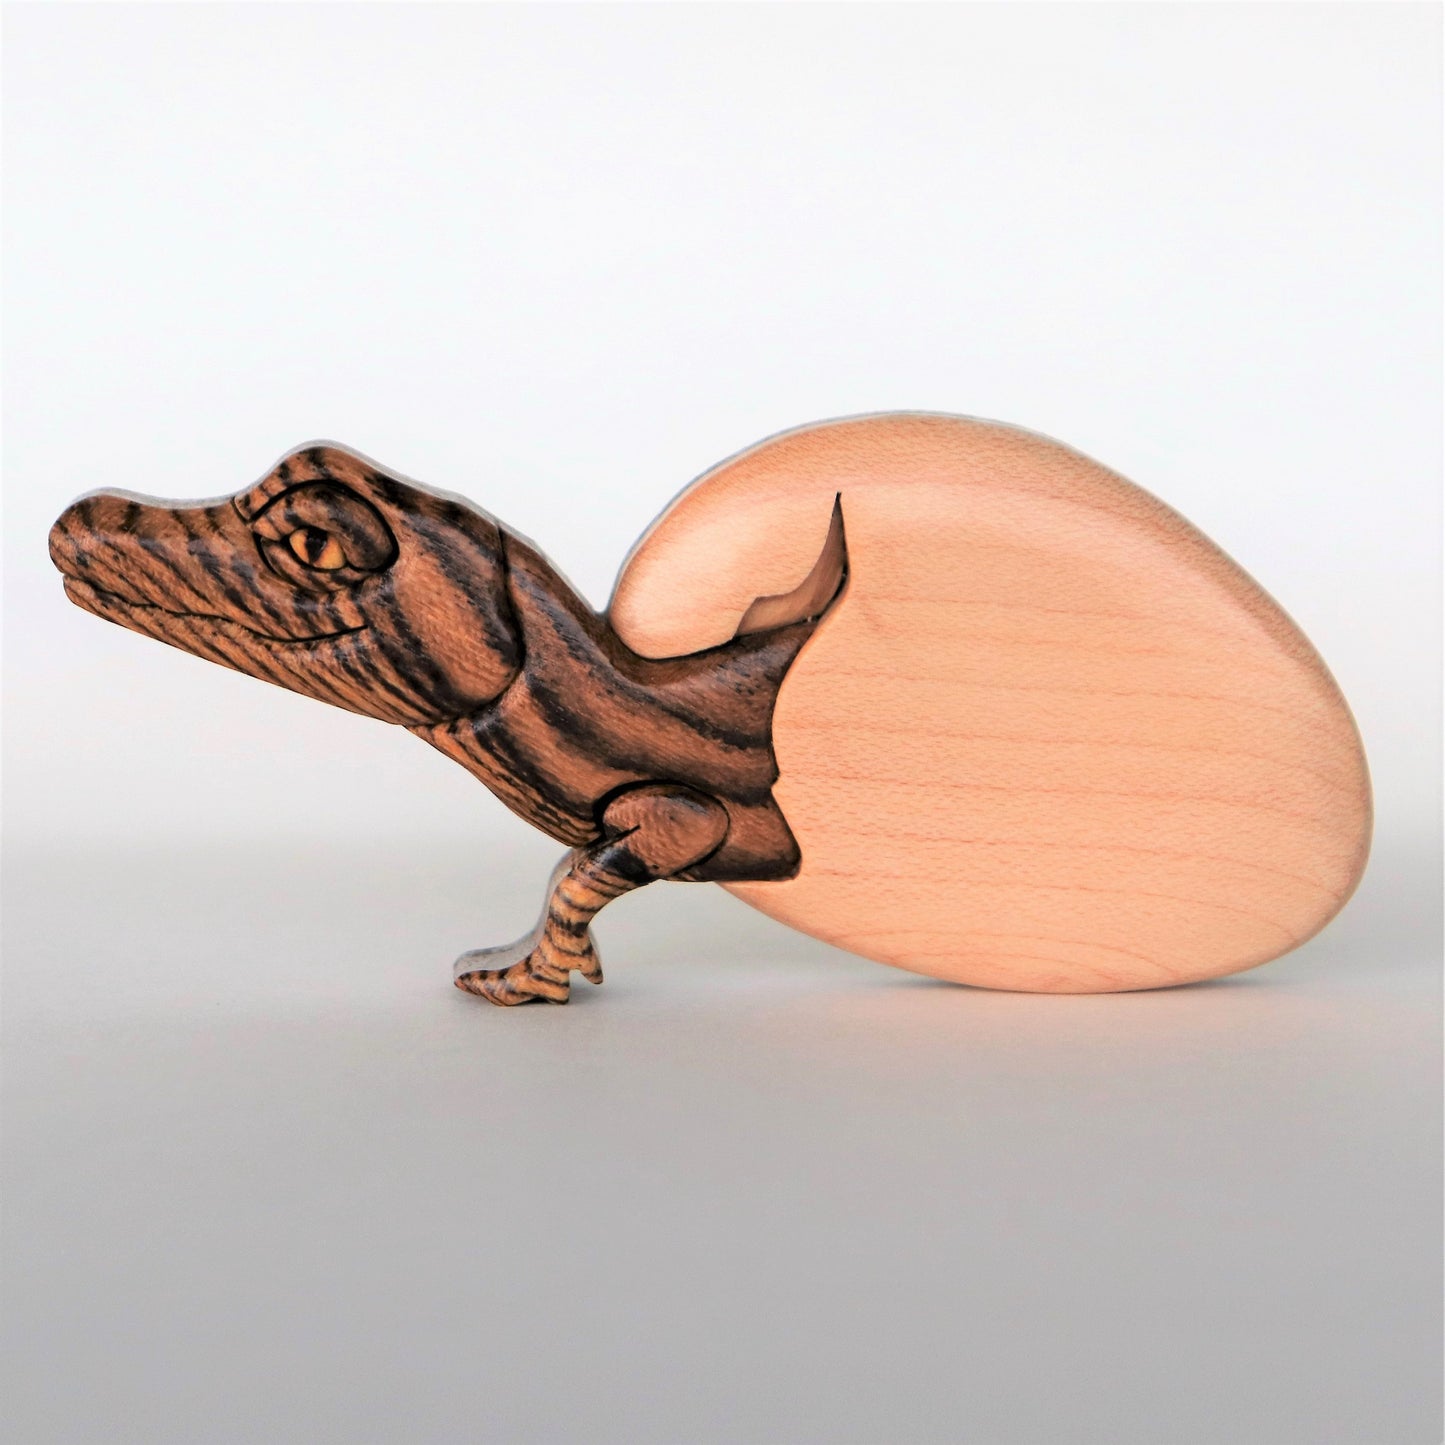 Alligator Hatchling Magnet / Ornament